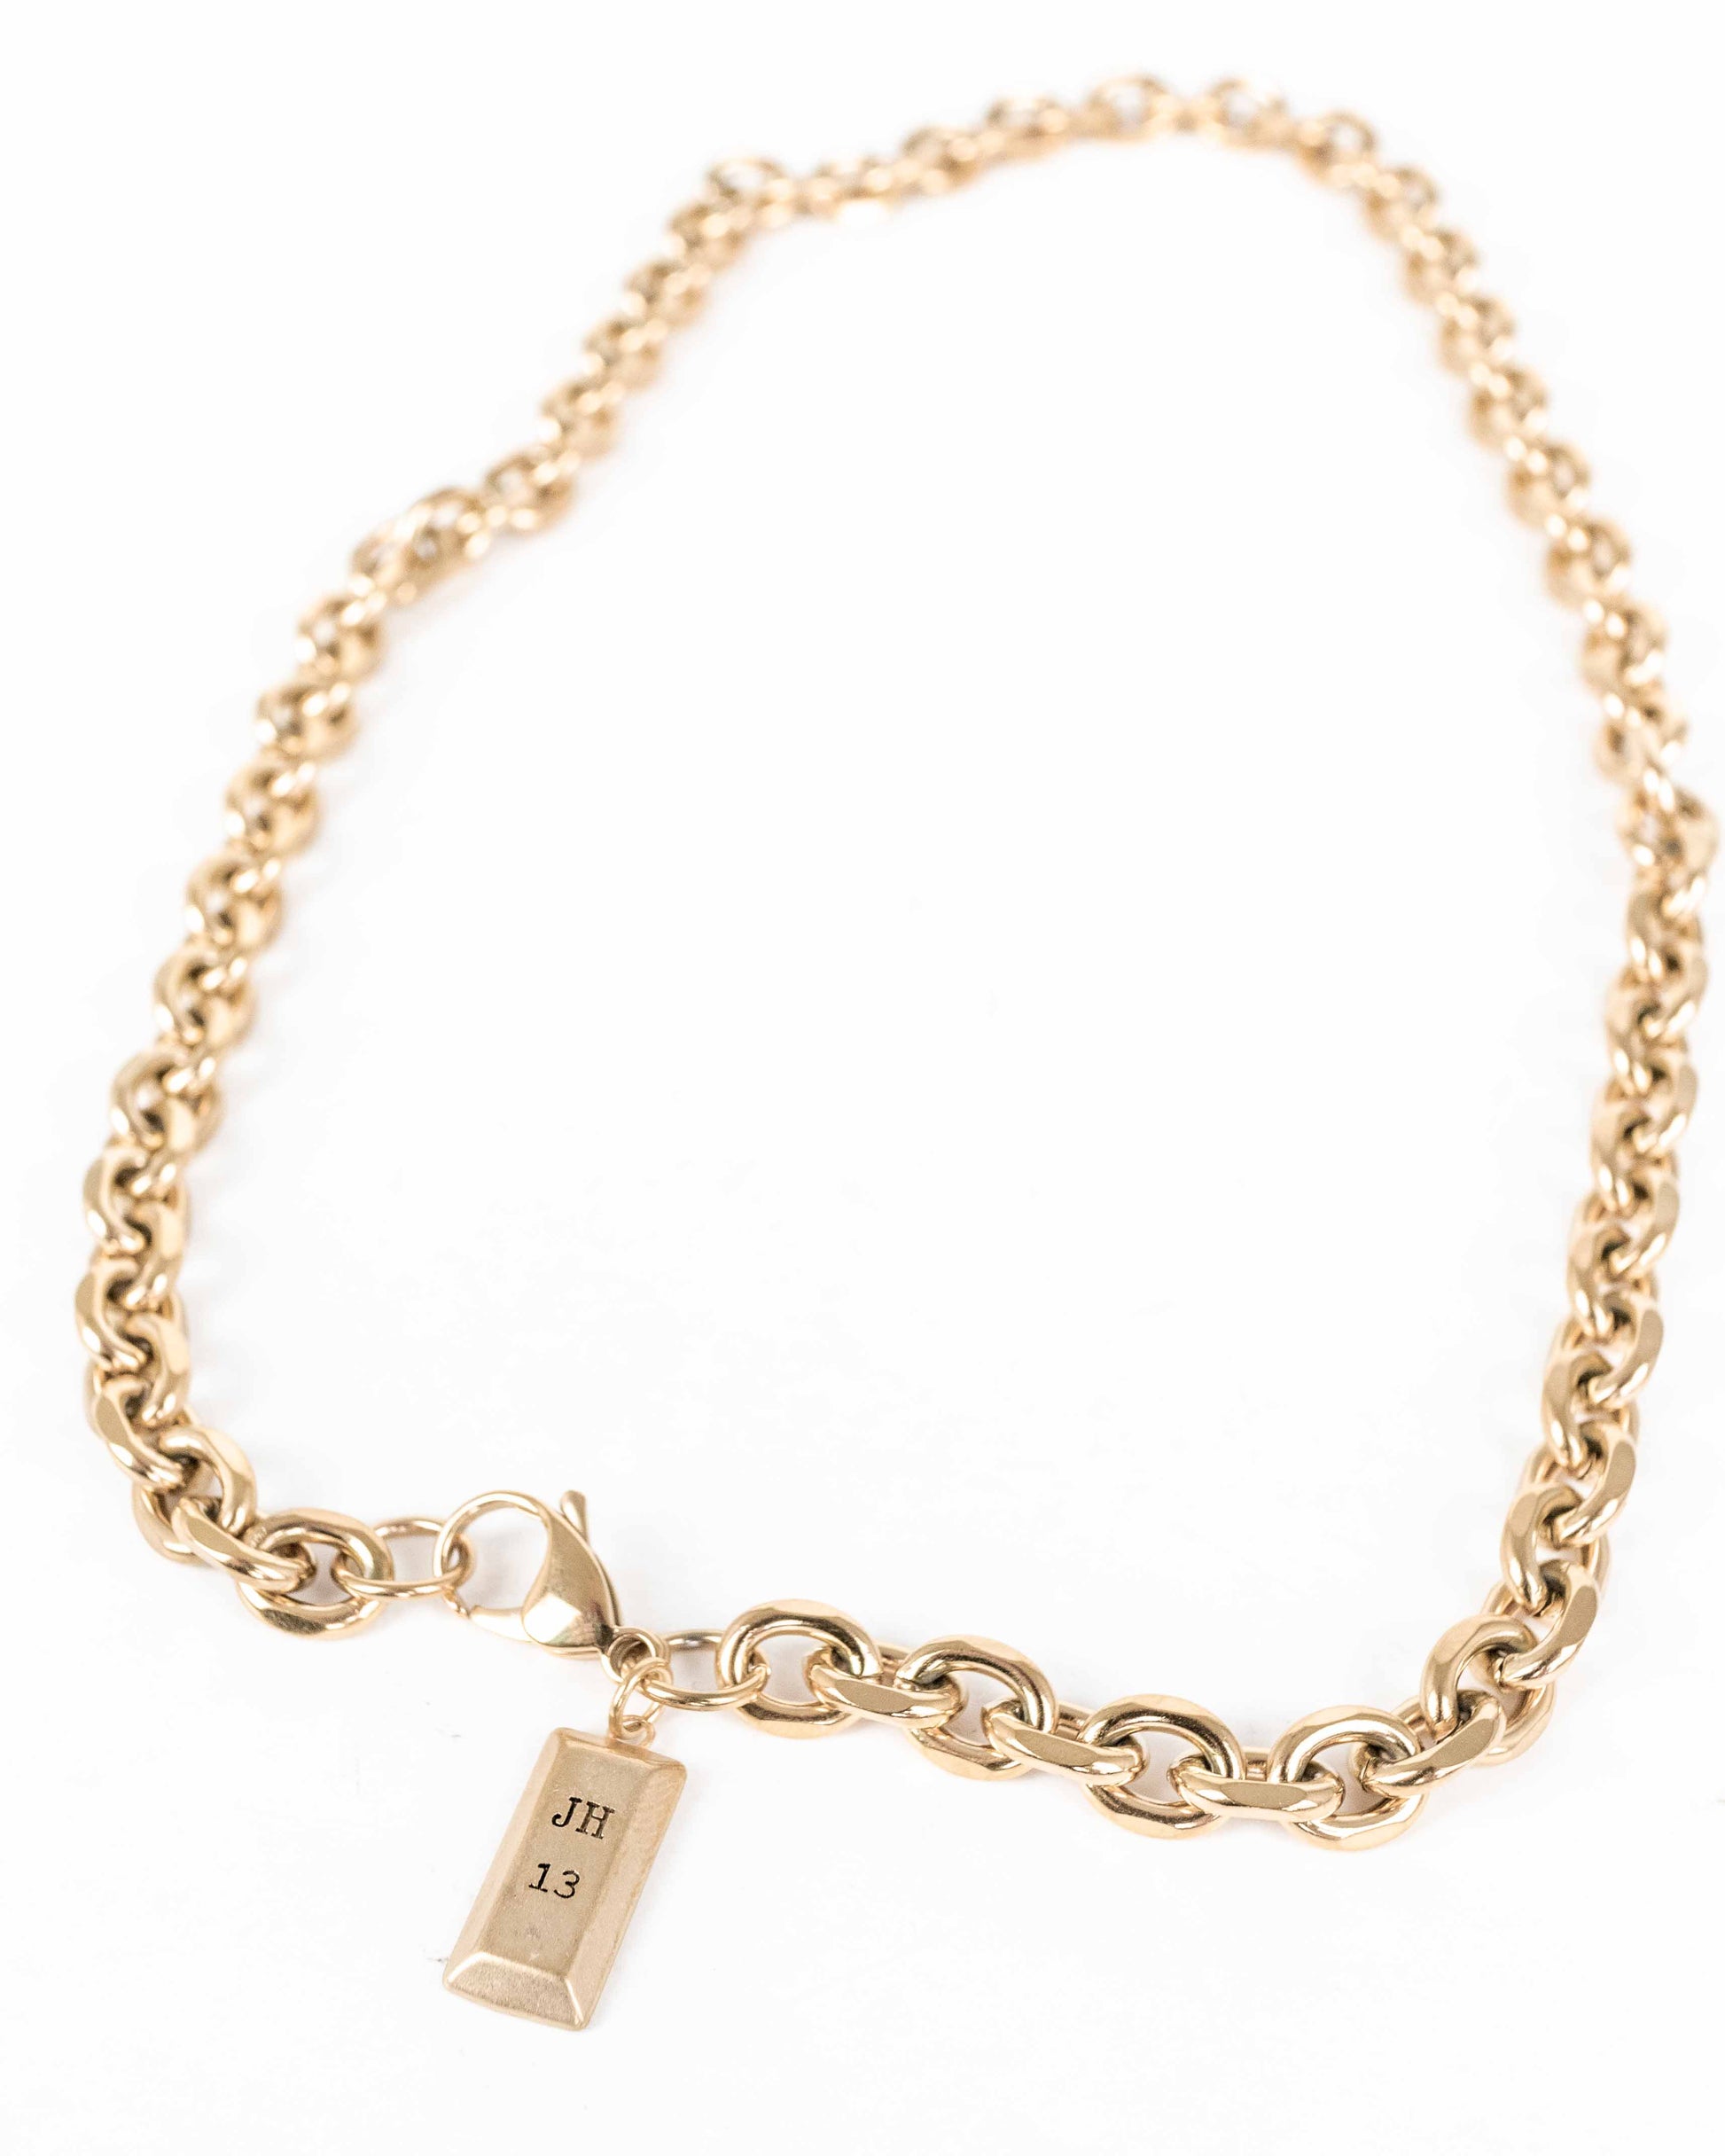 Minnesota Necklace - Gold